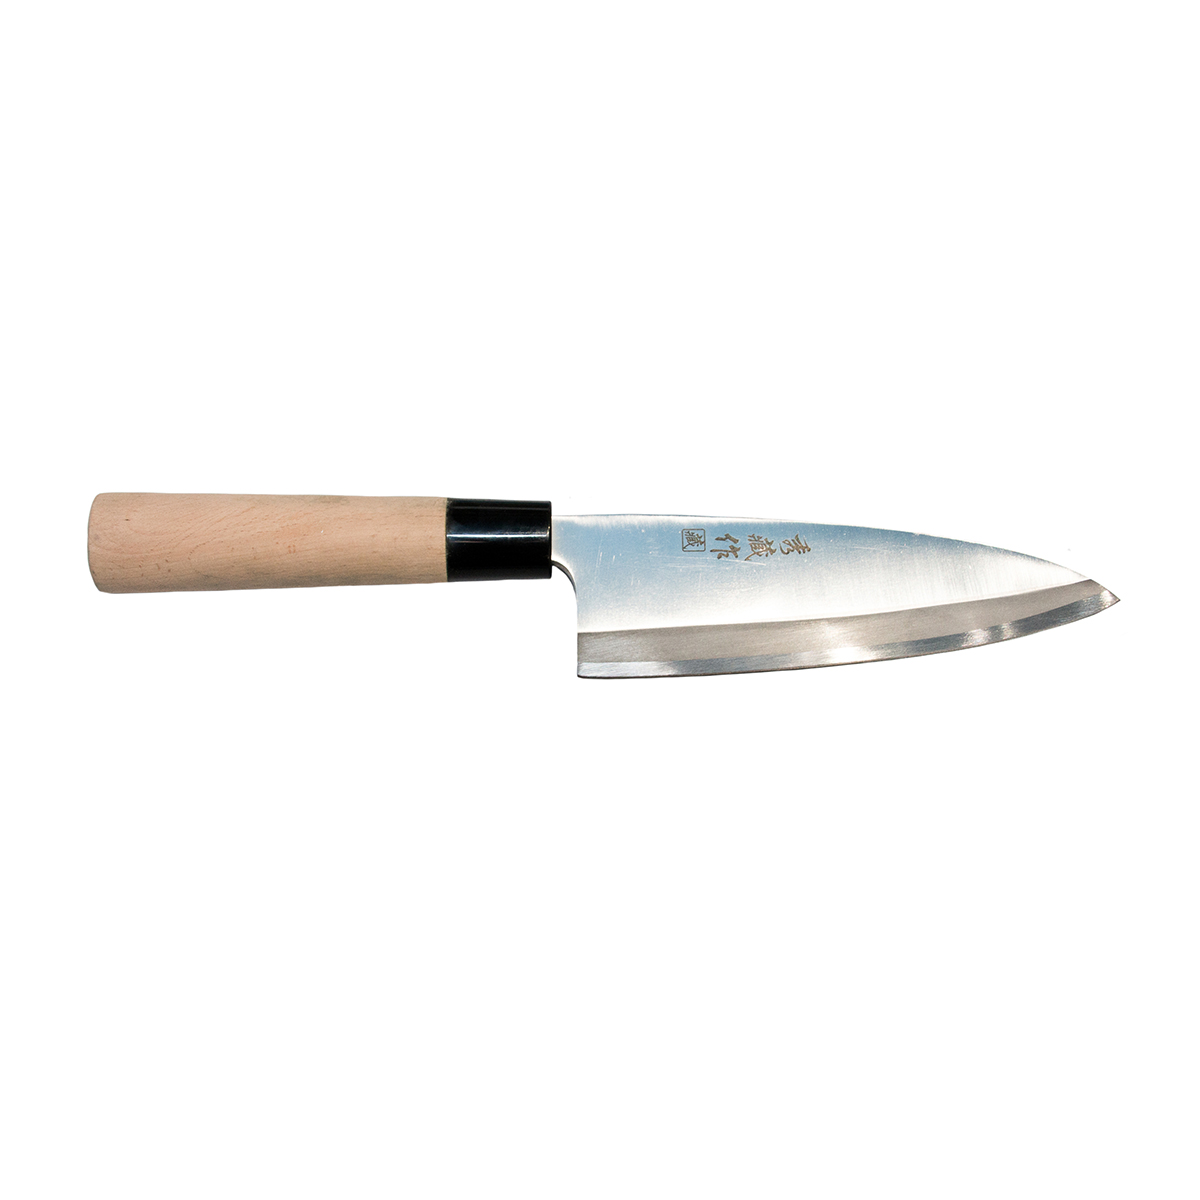 Нож для разделки рыбы "Деба" 18 см, P.L. Proff Cuisine